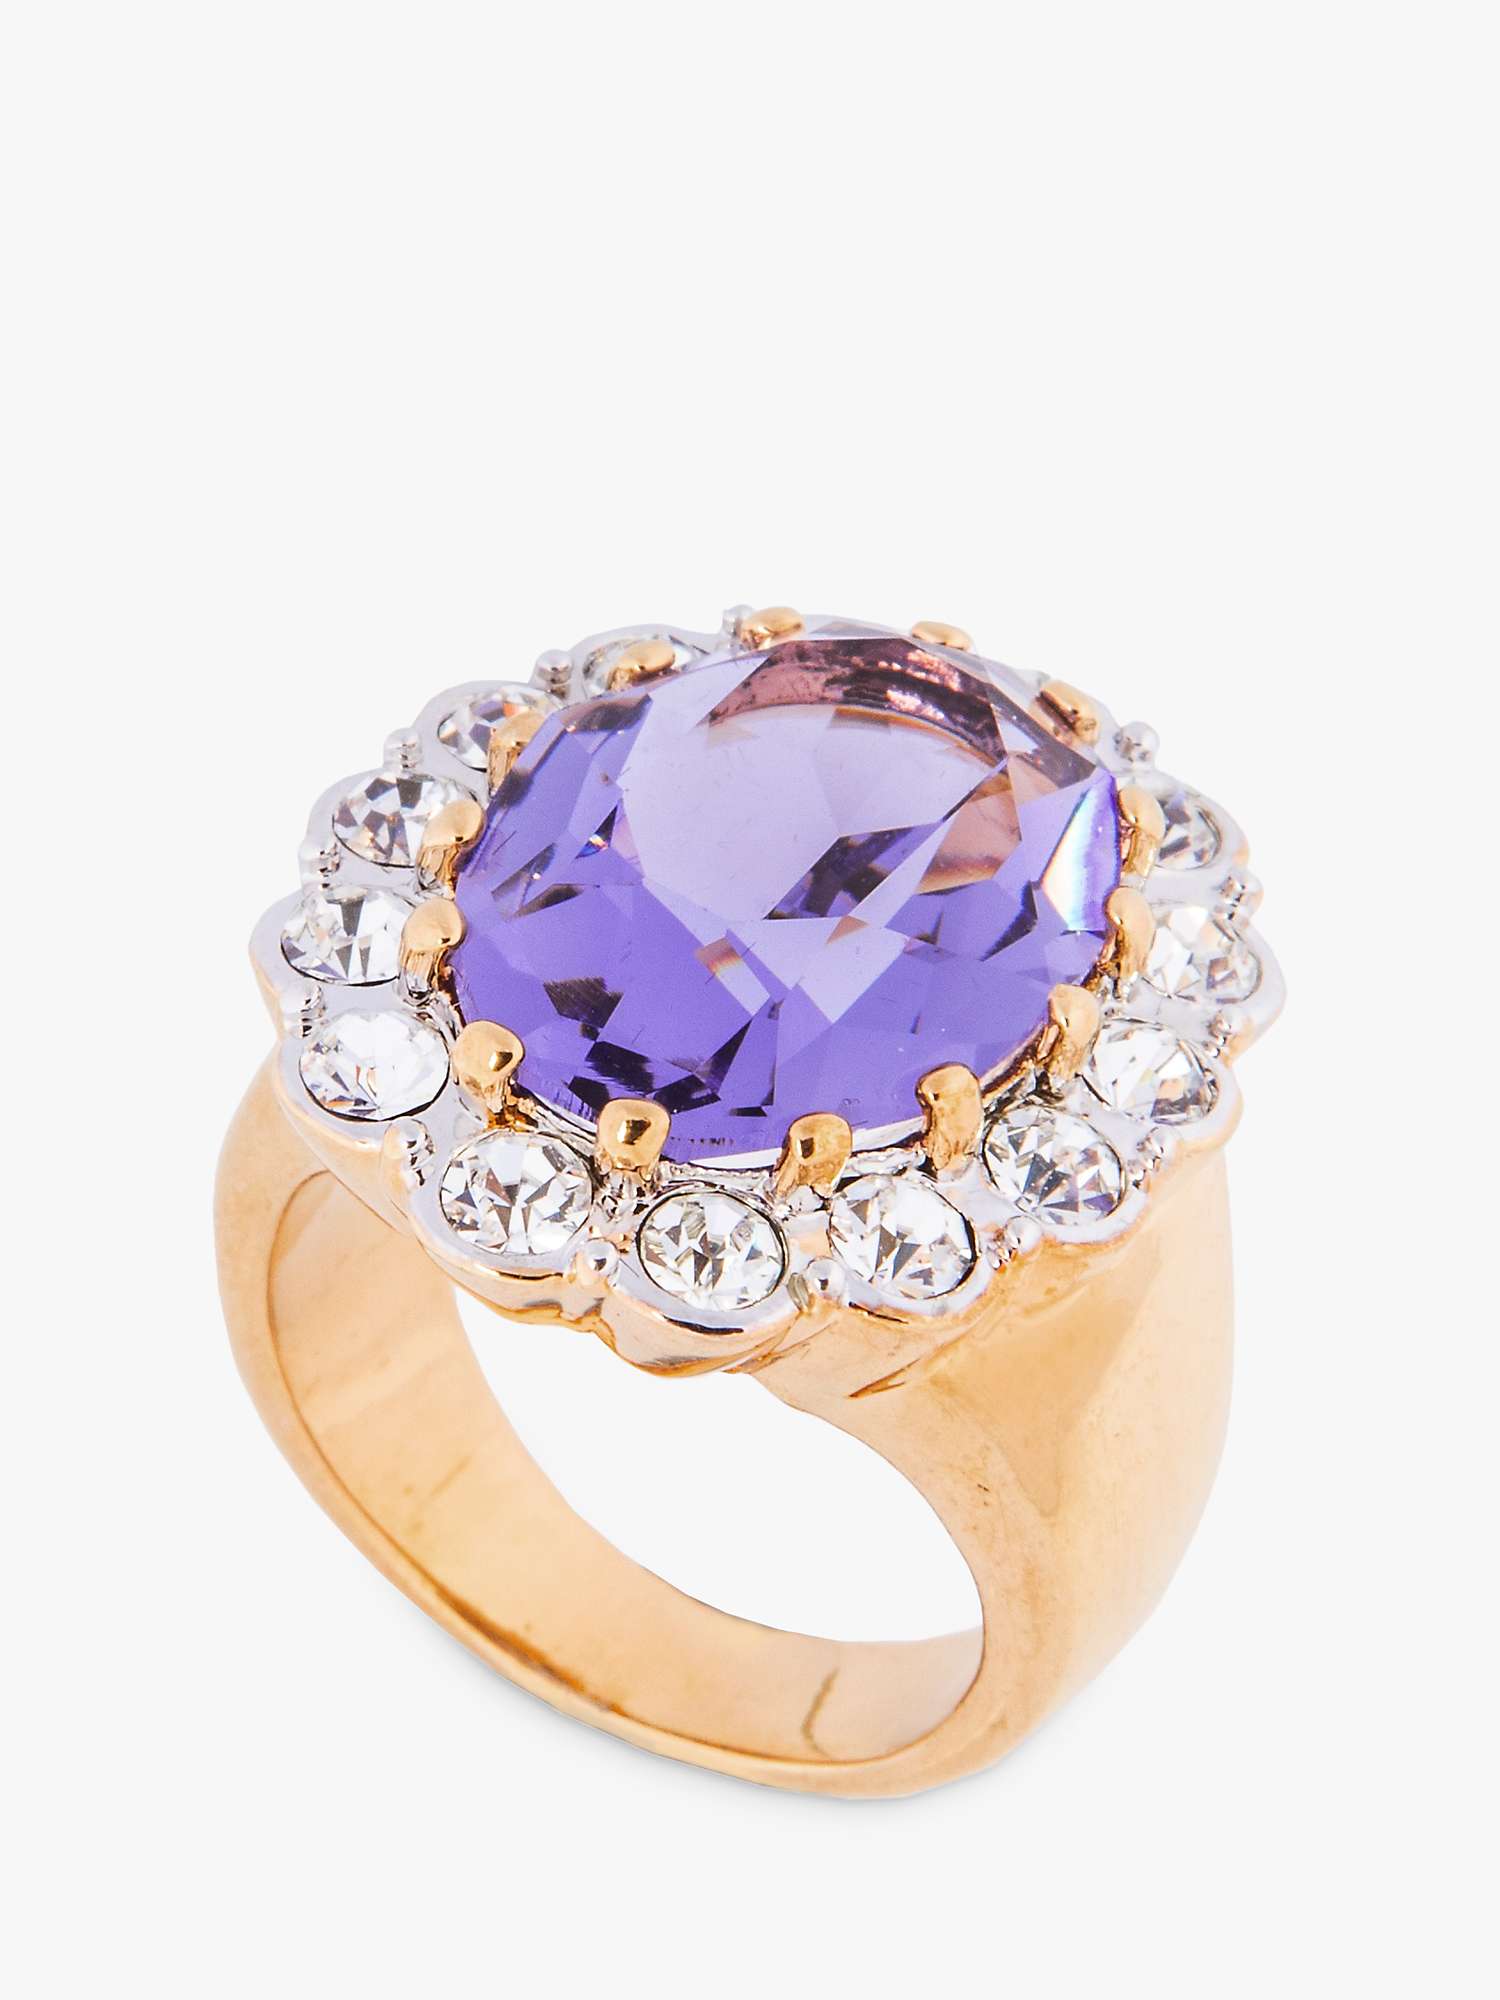 Buy Eclectica Vintage Swarovski Crystal Oval Cluster Ring, Gold/Lilac Online at johnlewis.com